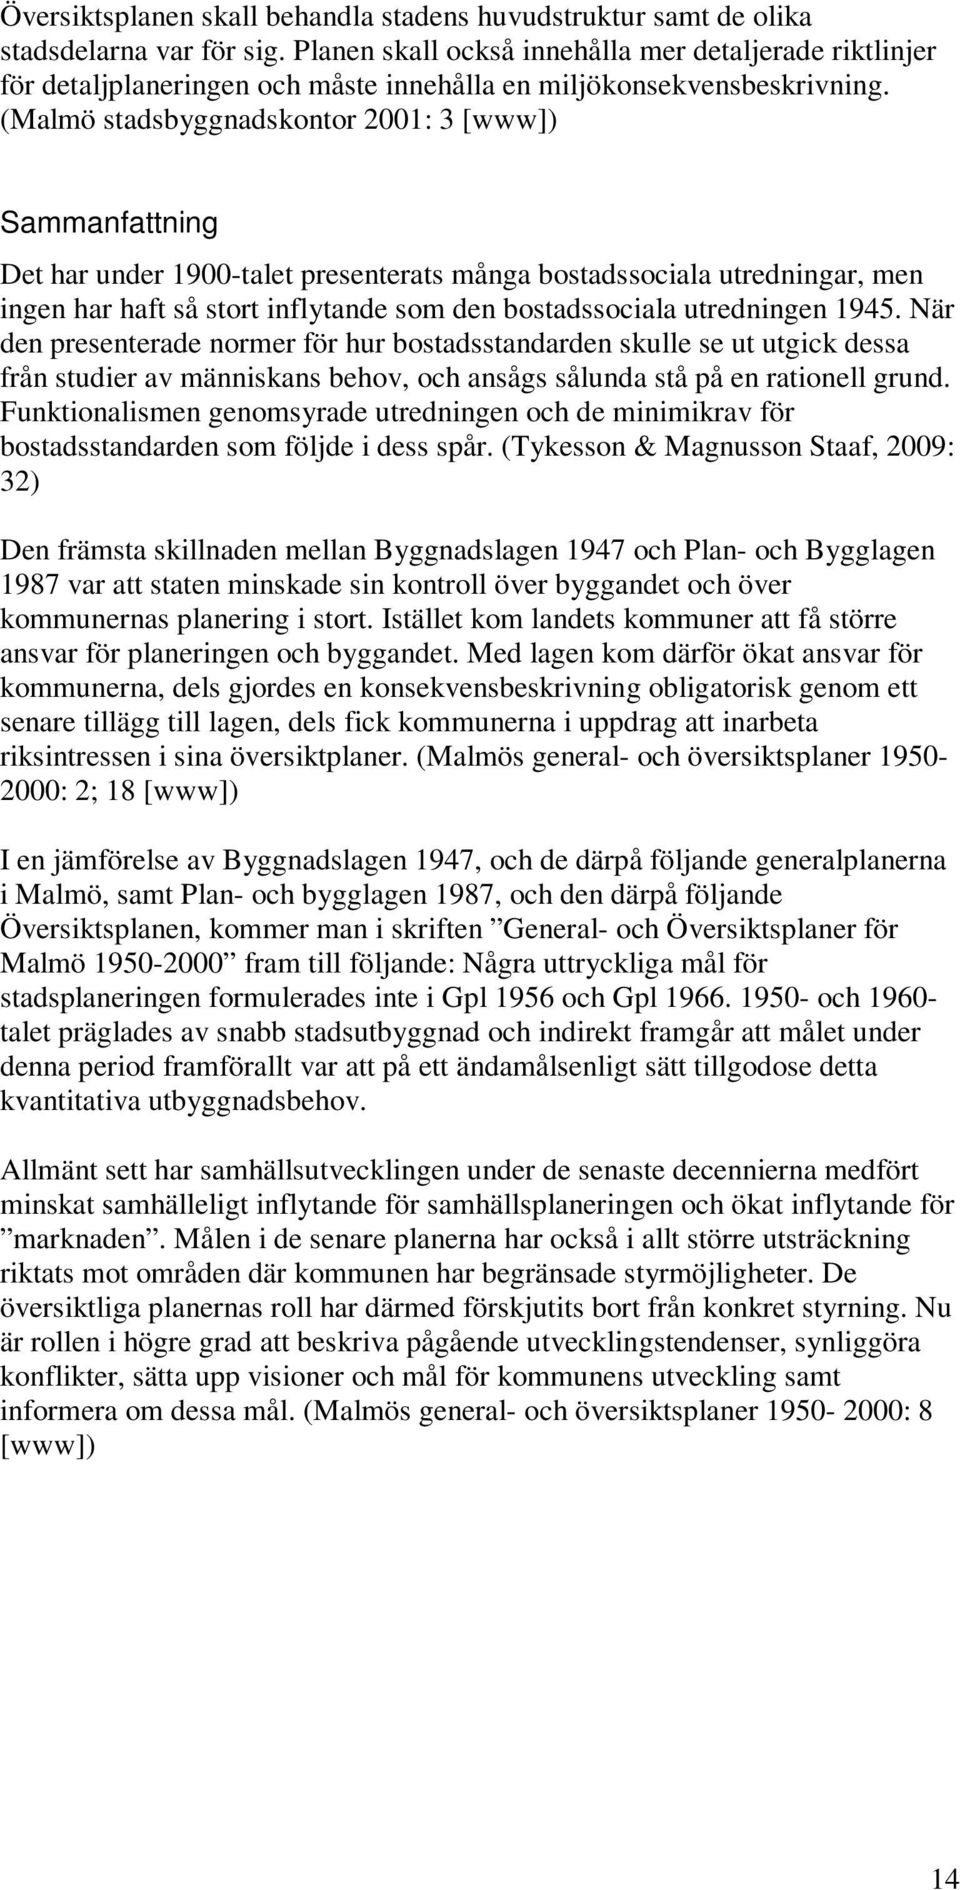 (Malmö stadsbyggnadskontor 2001: 3 [www]) Sammanfattning Det har under 1900-talet presenterats många bostadssociala utredningar, men ingen har haft så stort inflytande som den bostadssociala